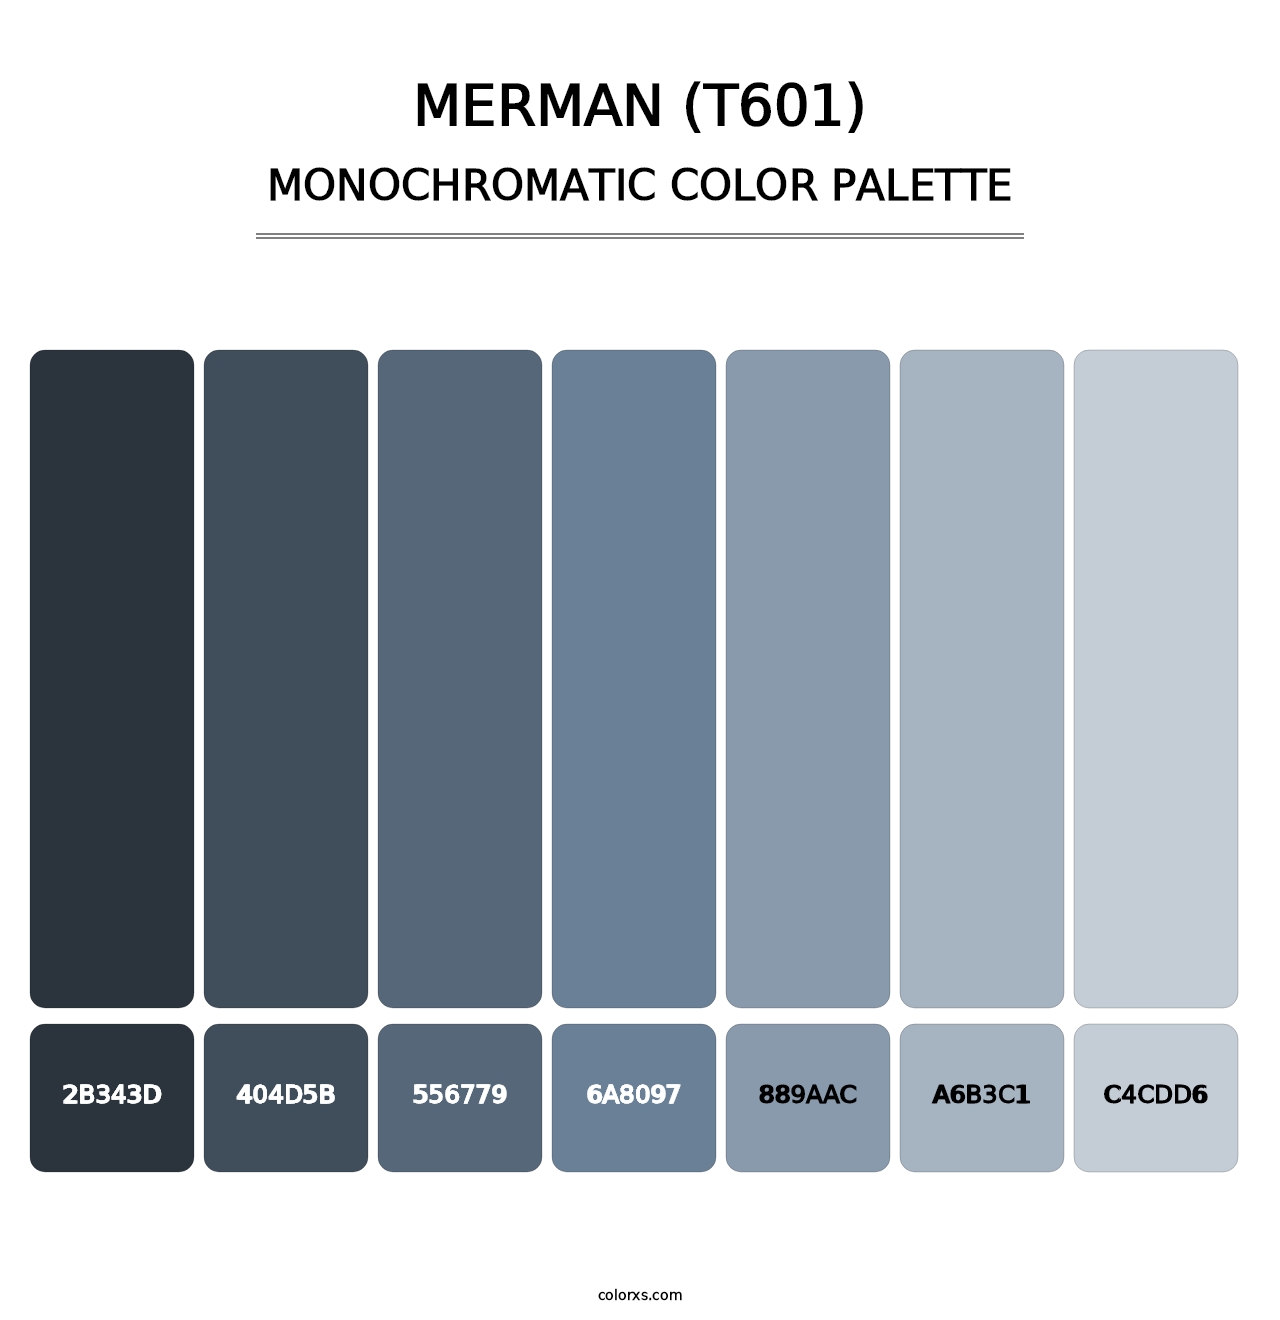 Merman (T601) - Monochromatic Color Palette